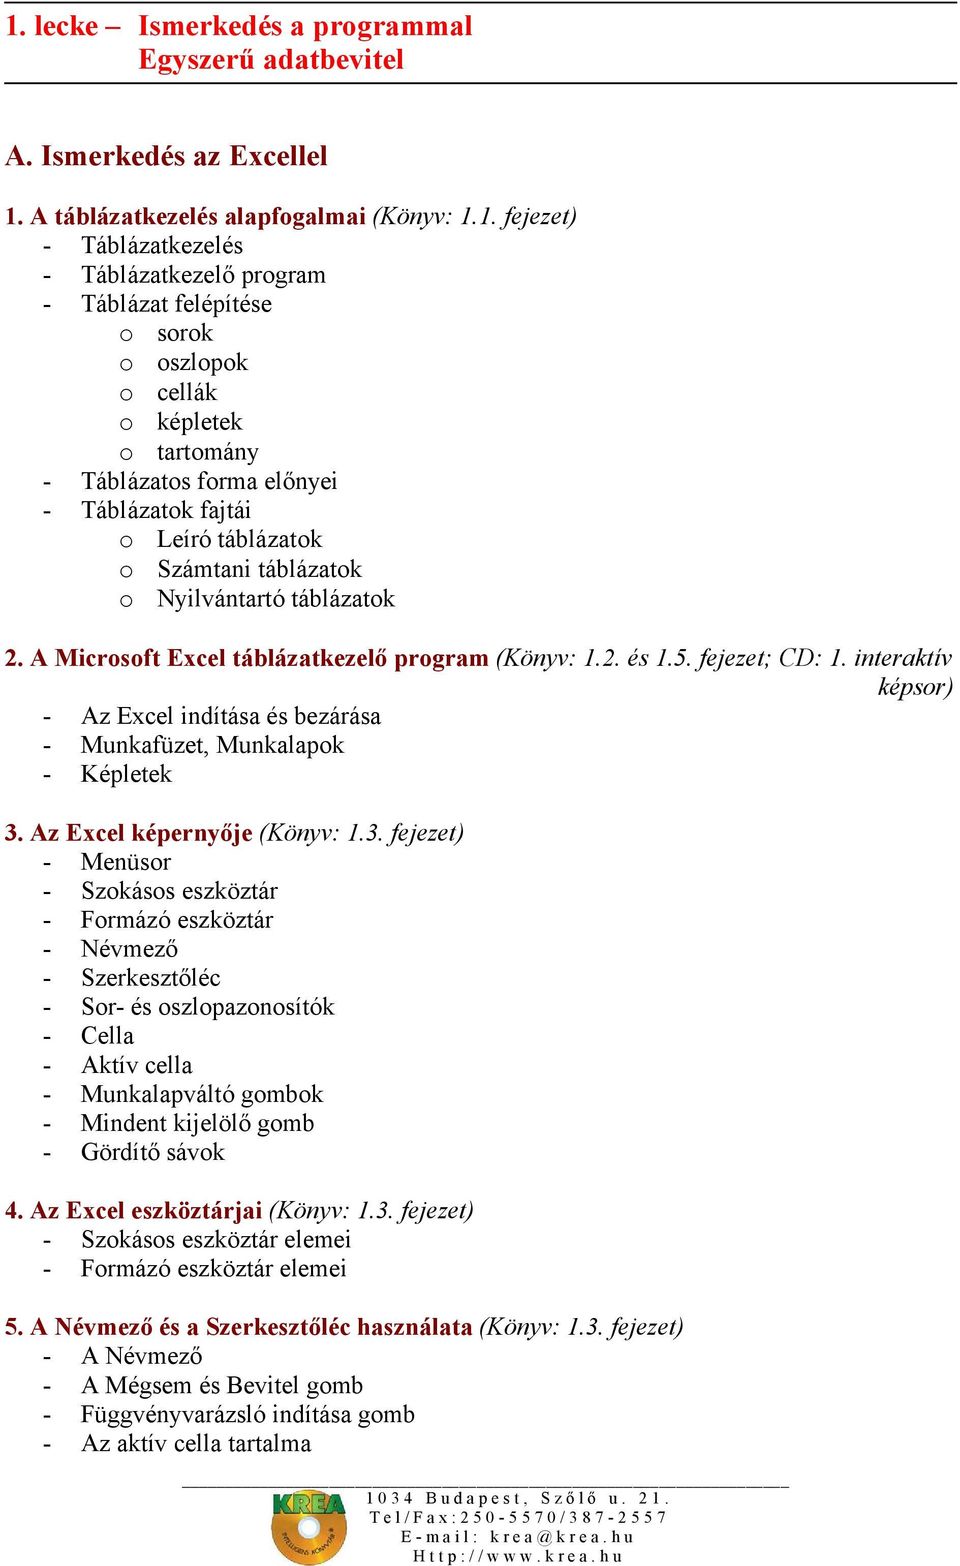 A Microsoft Excel táblázatkezelő program (Könyv: 1.2. és 1.5. fejezet; CD: 1. interaktív képsor) - Az Excel indítása és bezárása - Munkafüzet, Munkalapok - Képletek 3.